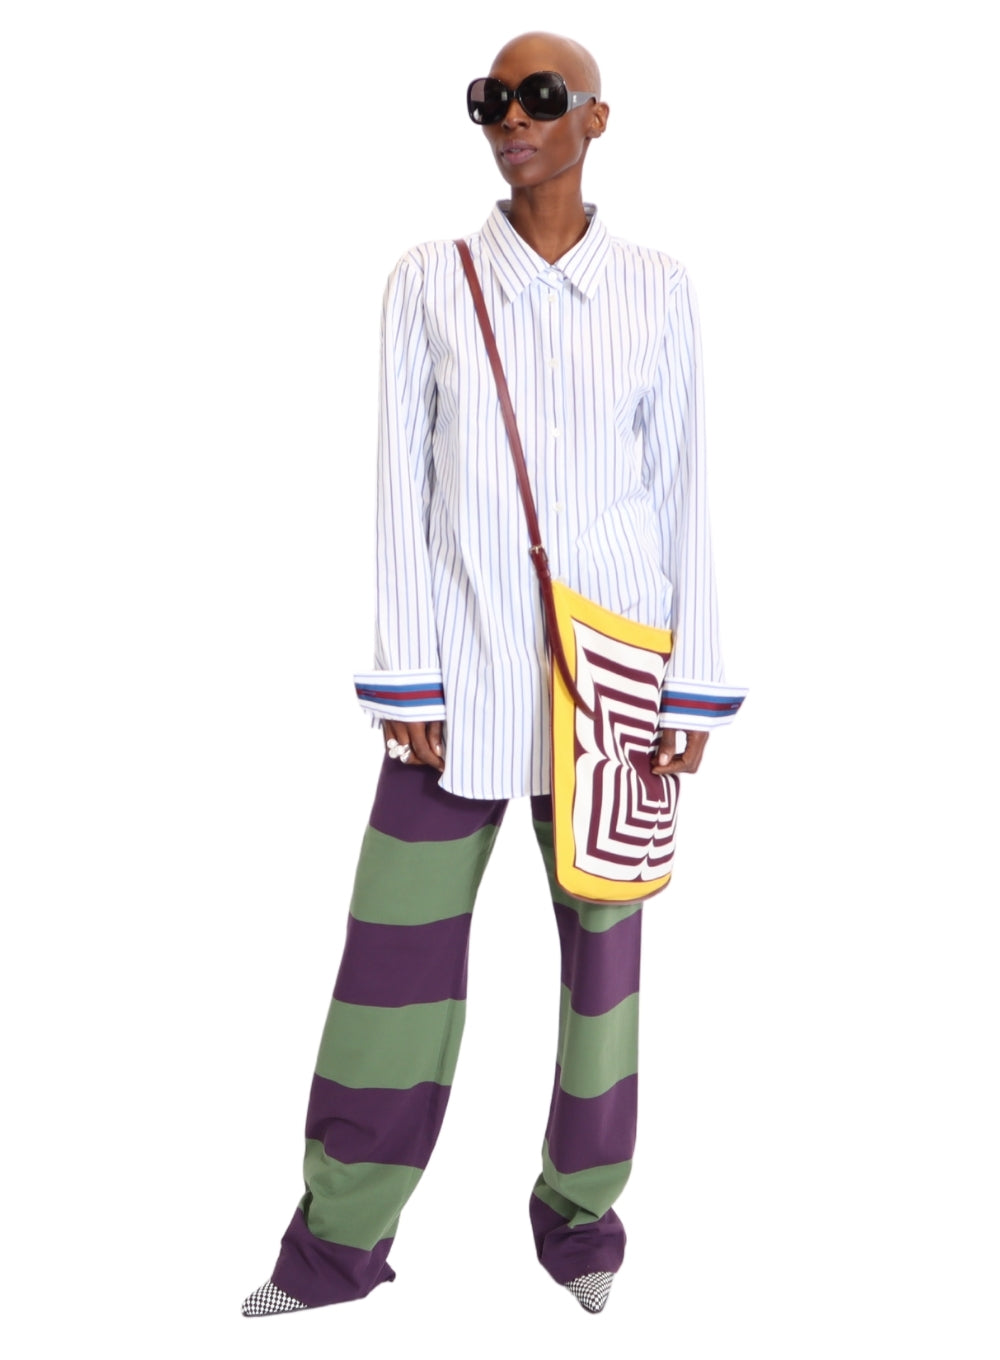 DRIES VAN NOTEN | Striped Button-Up With Striped Cuffs